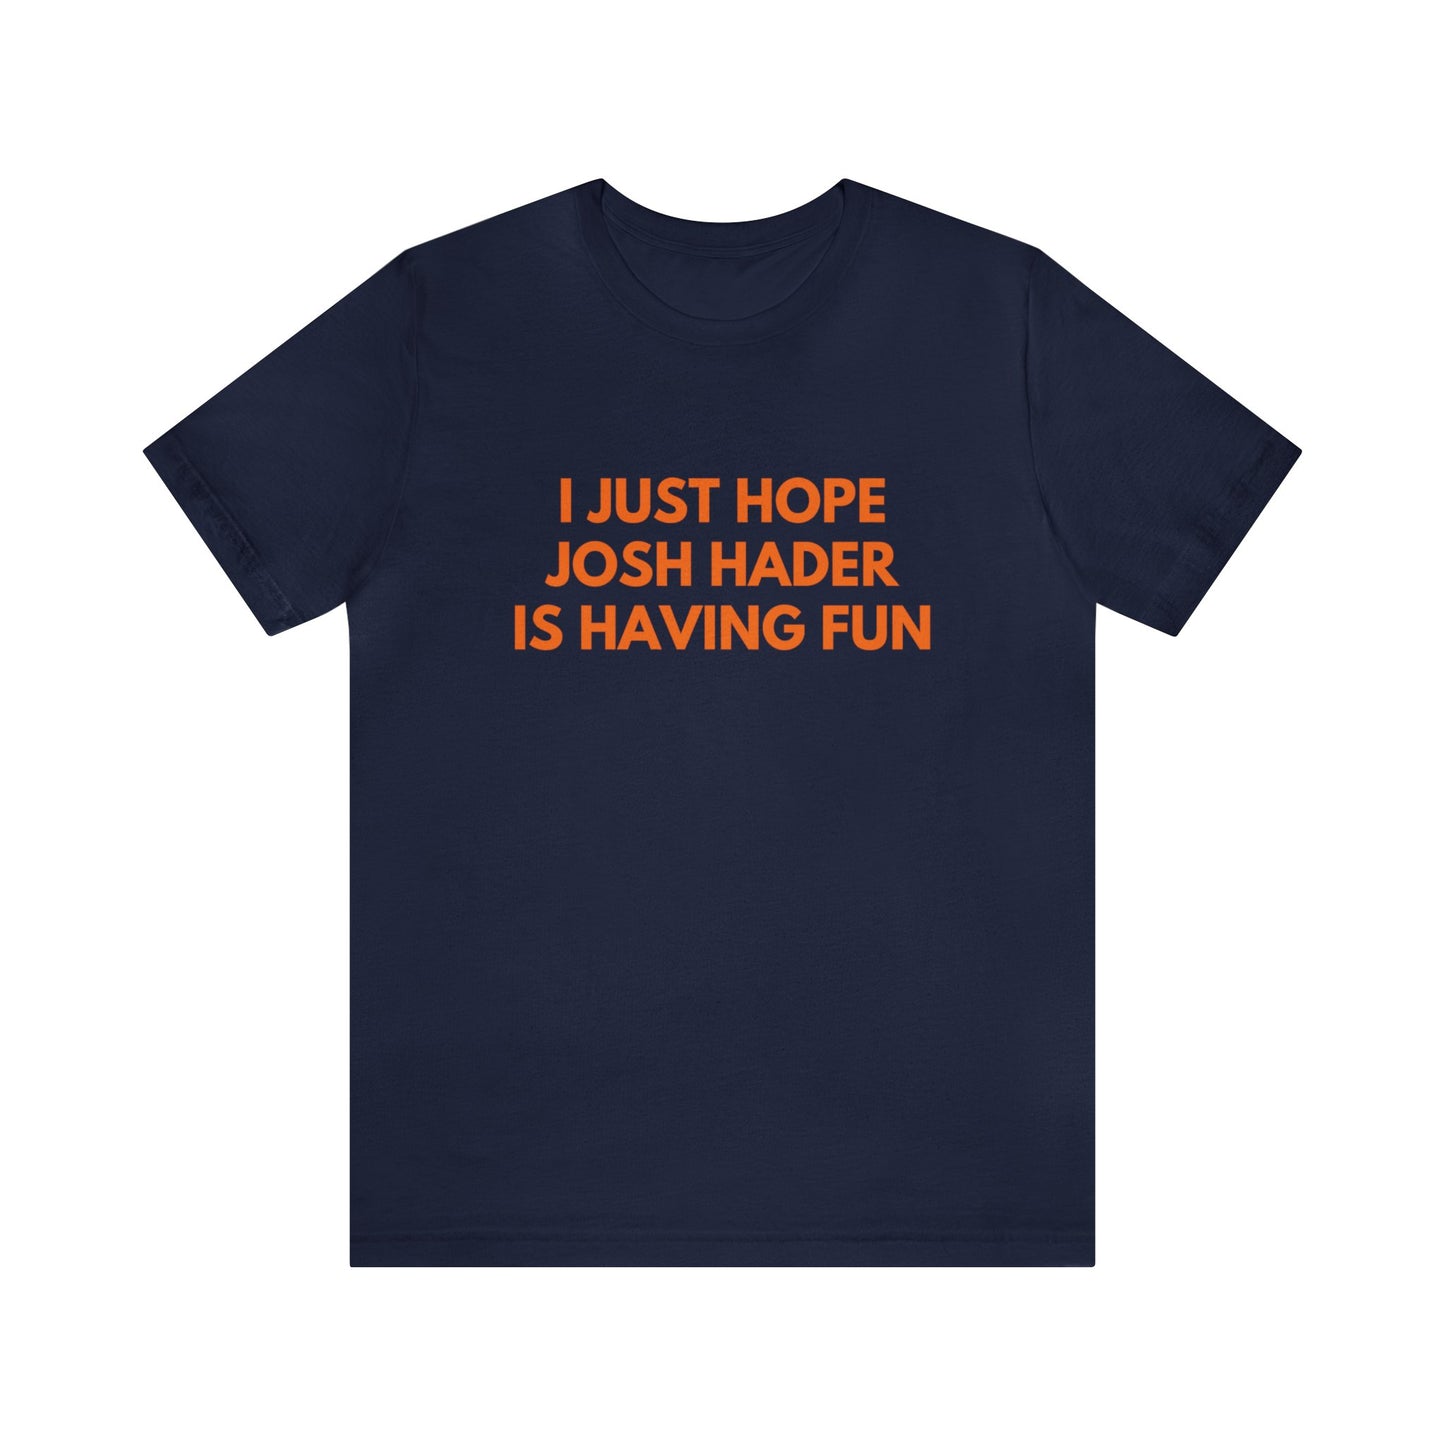 Josh Hader Having Fun - Unisex T-shirt